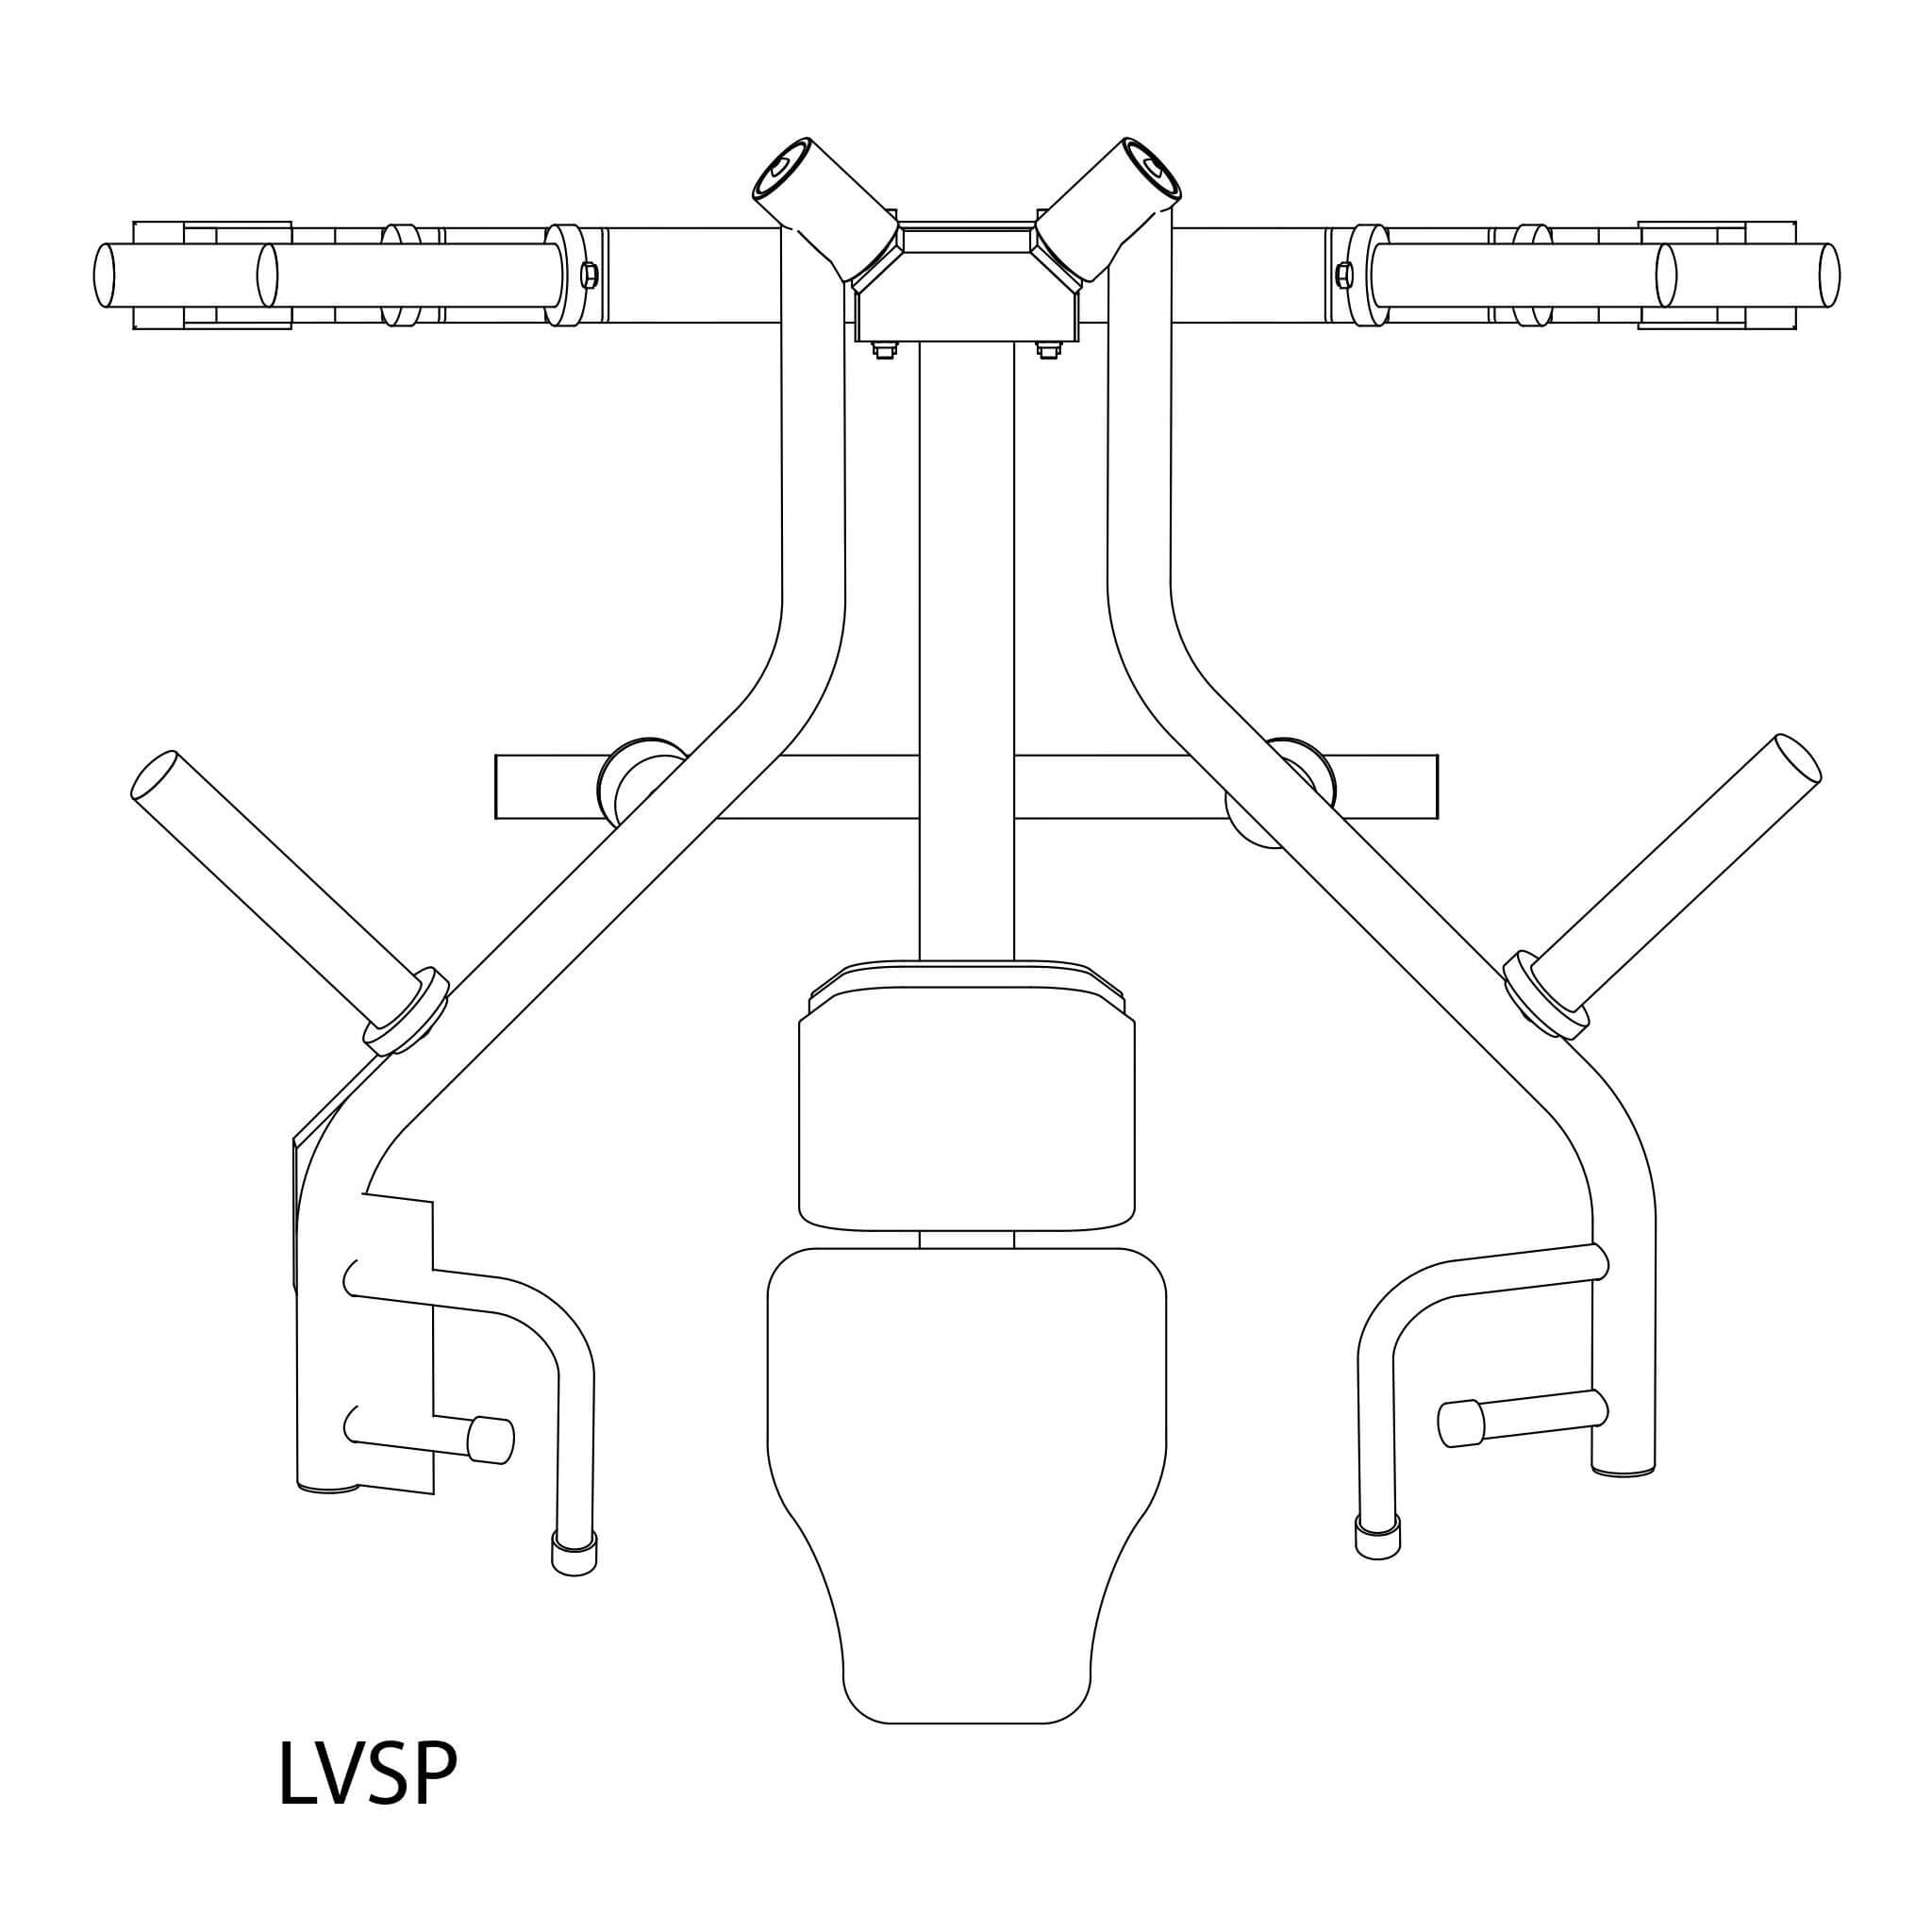 lvsp leverage shoulder press dimensions